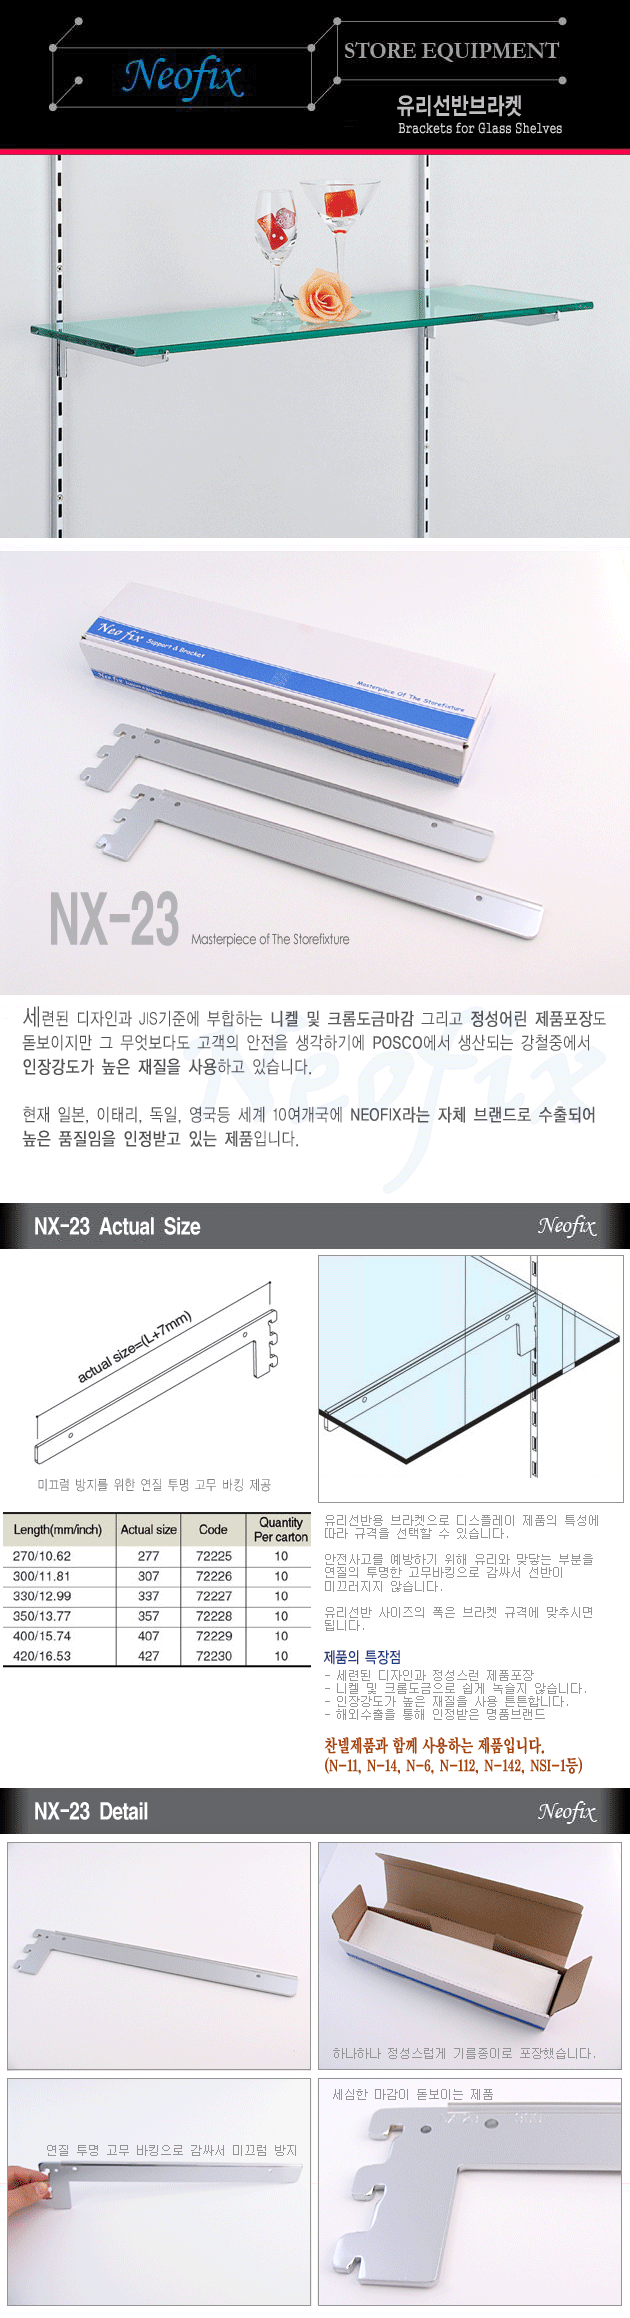 NX-23